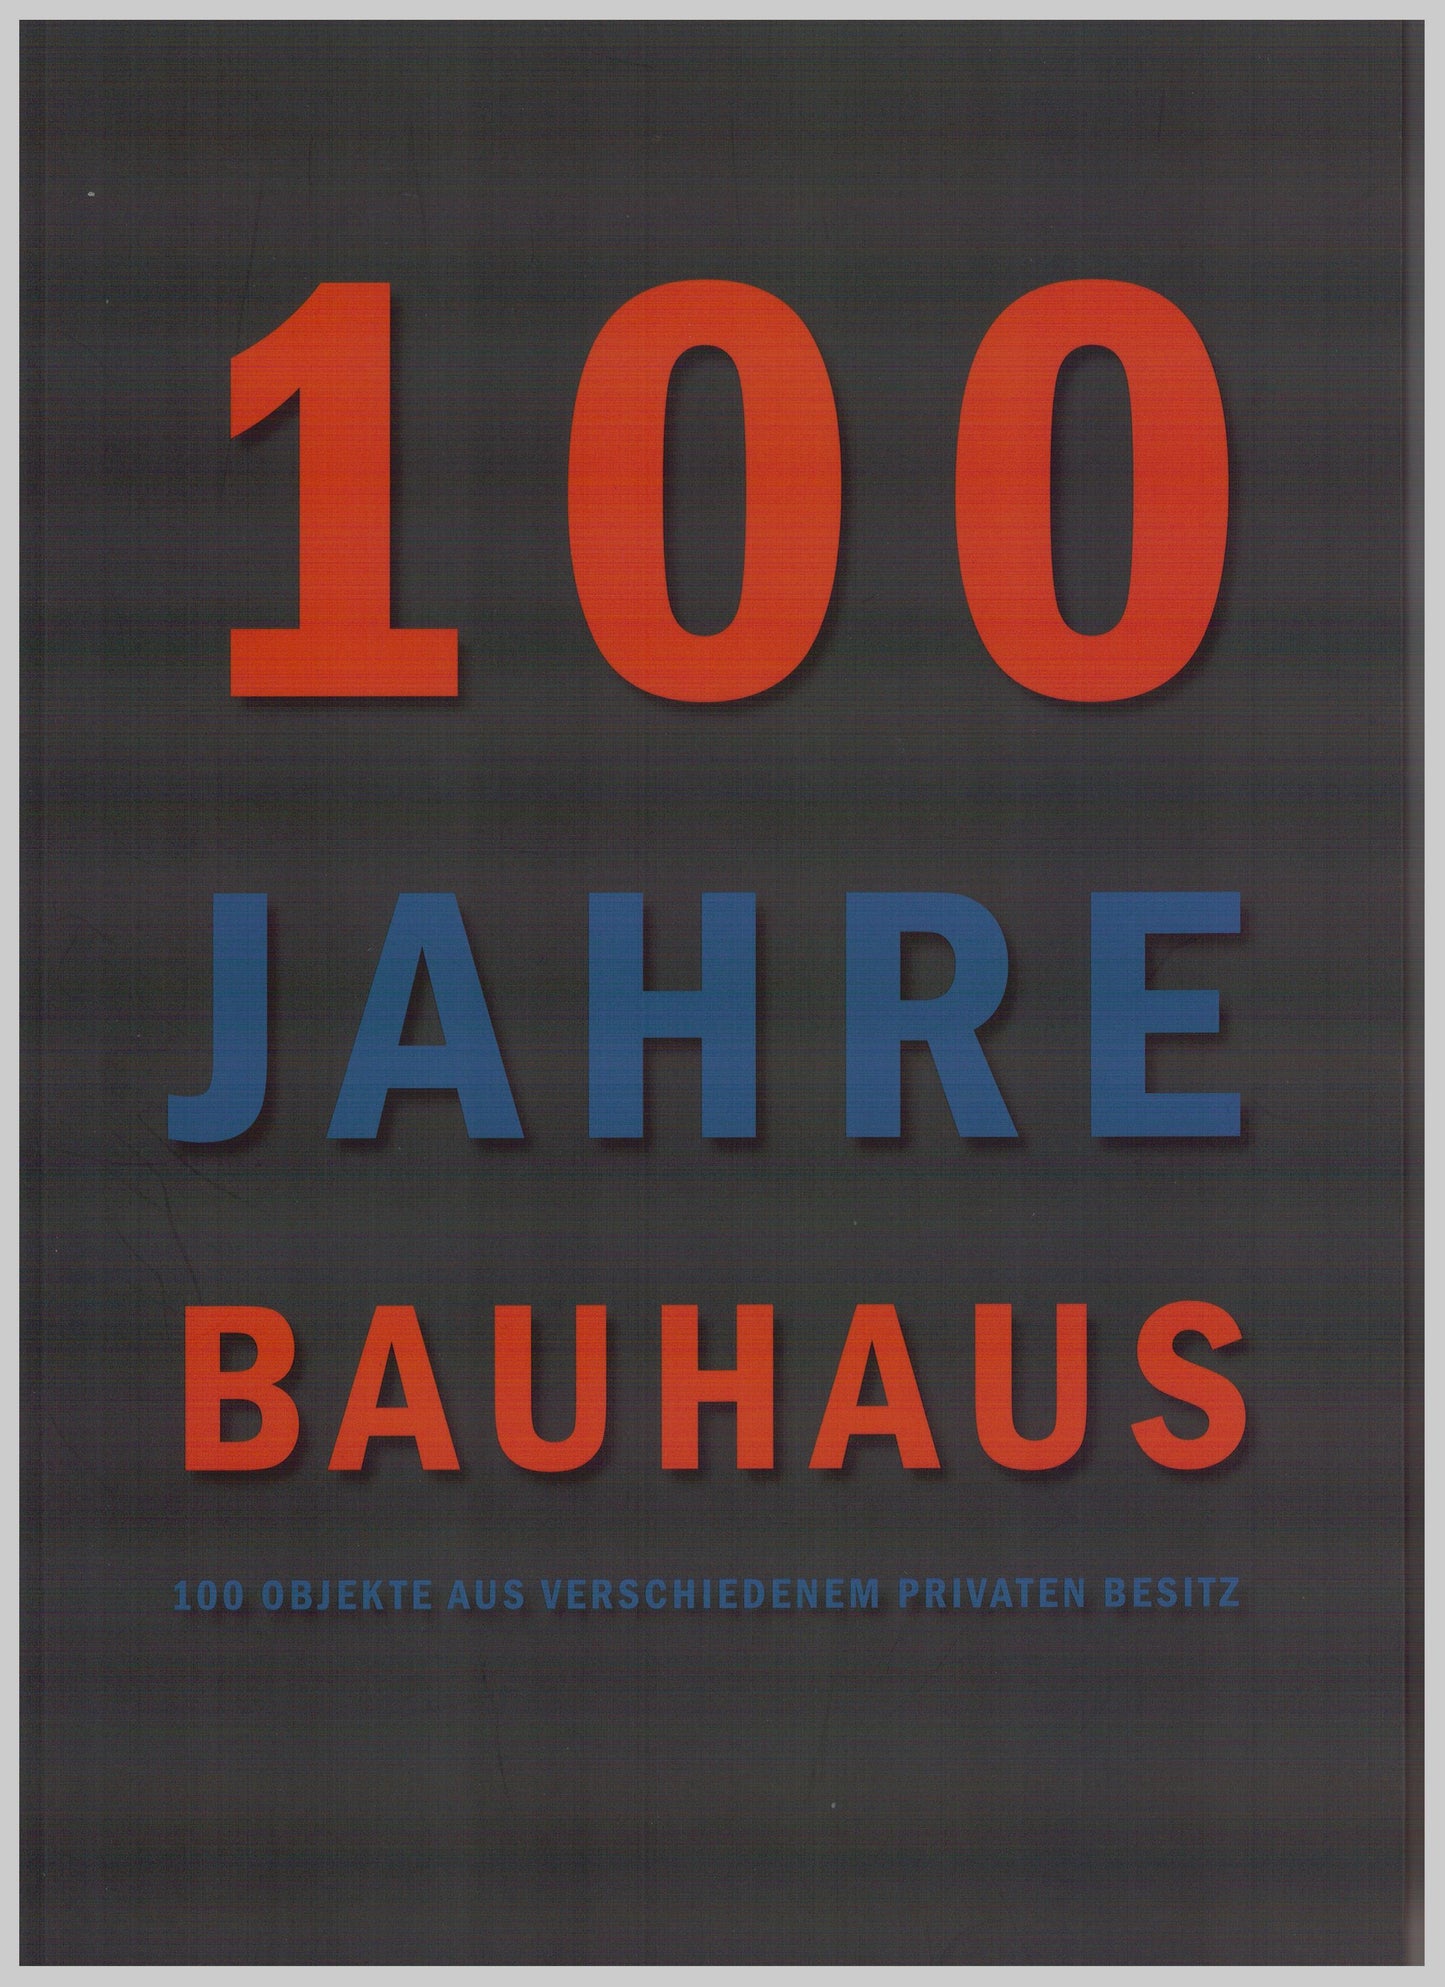 100 Jahre Bauhaus 1919 - 2019, 100 Objekte aus verschiedenem privaten Besitz